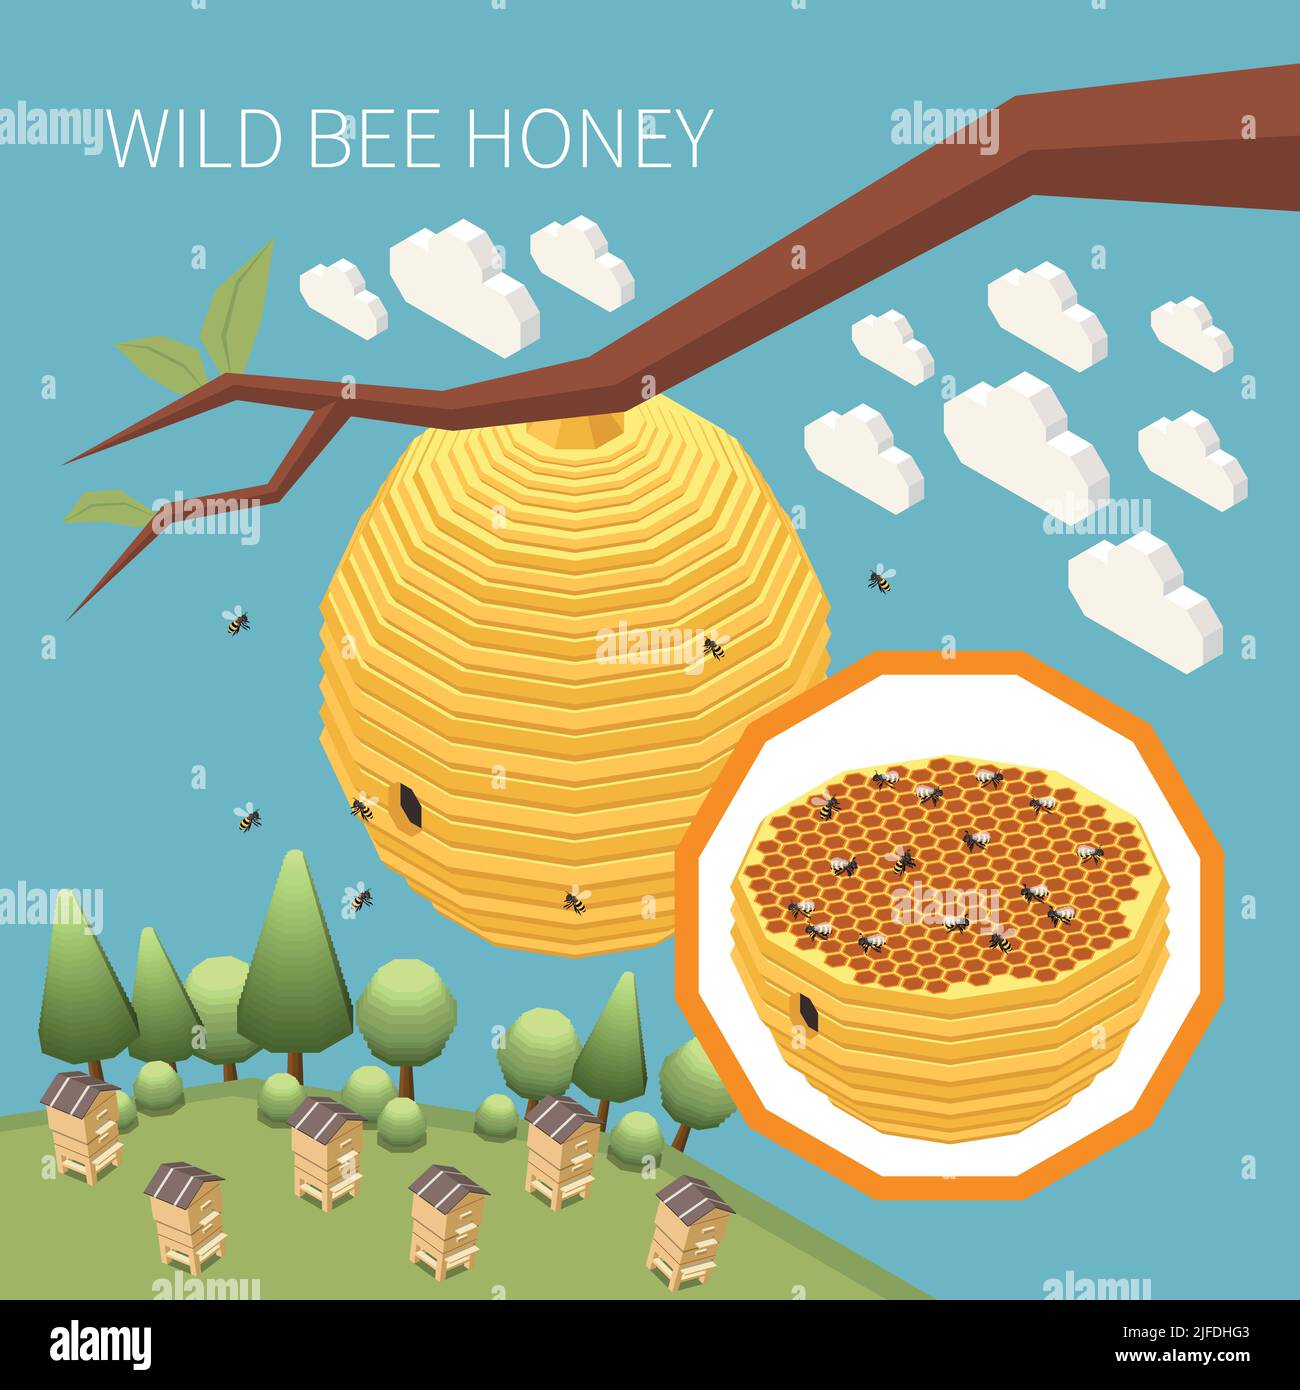 Arrière-plan isométrique de miel d'abeille sauvage avec nid de ruche d'abeille accrochée sur l'illustration du vecteur de branche d'arbre Illustration de Vecteur